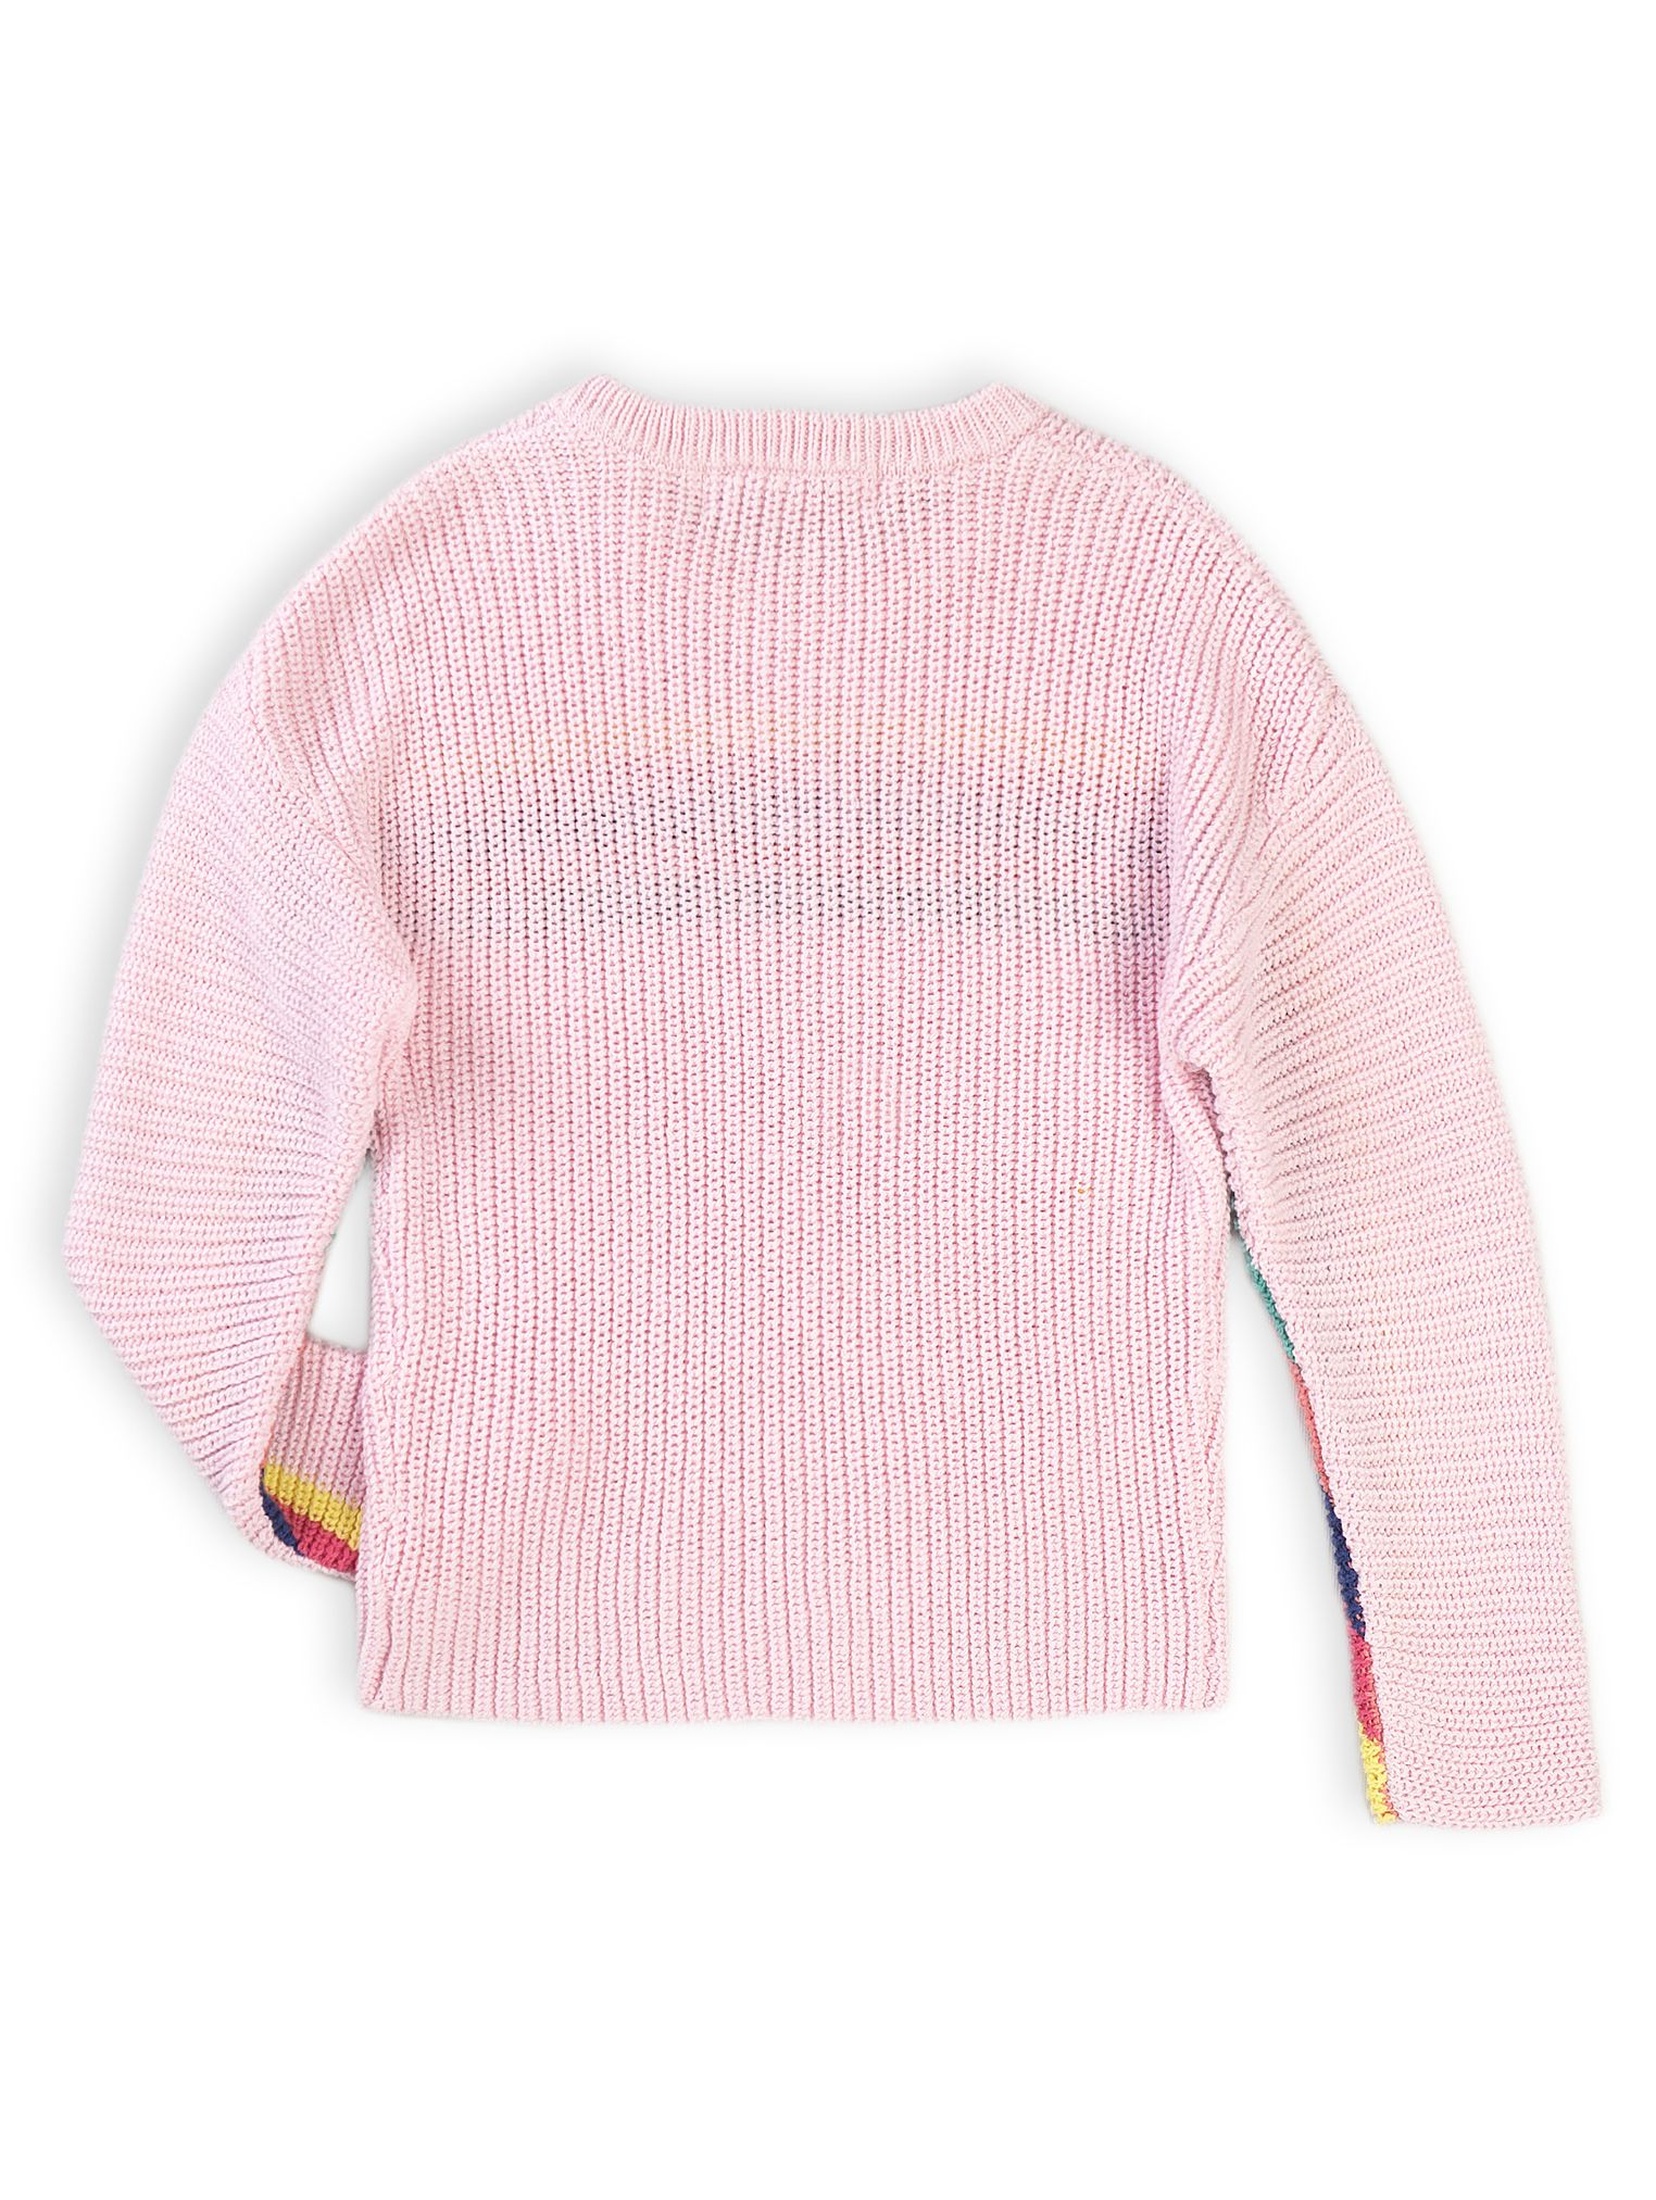 Różowy sweter dziewczęcy w kolorowe paski